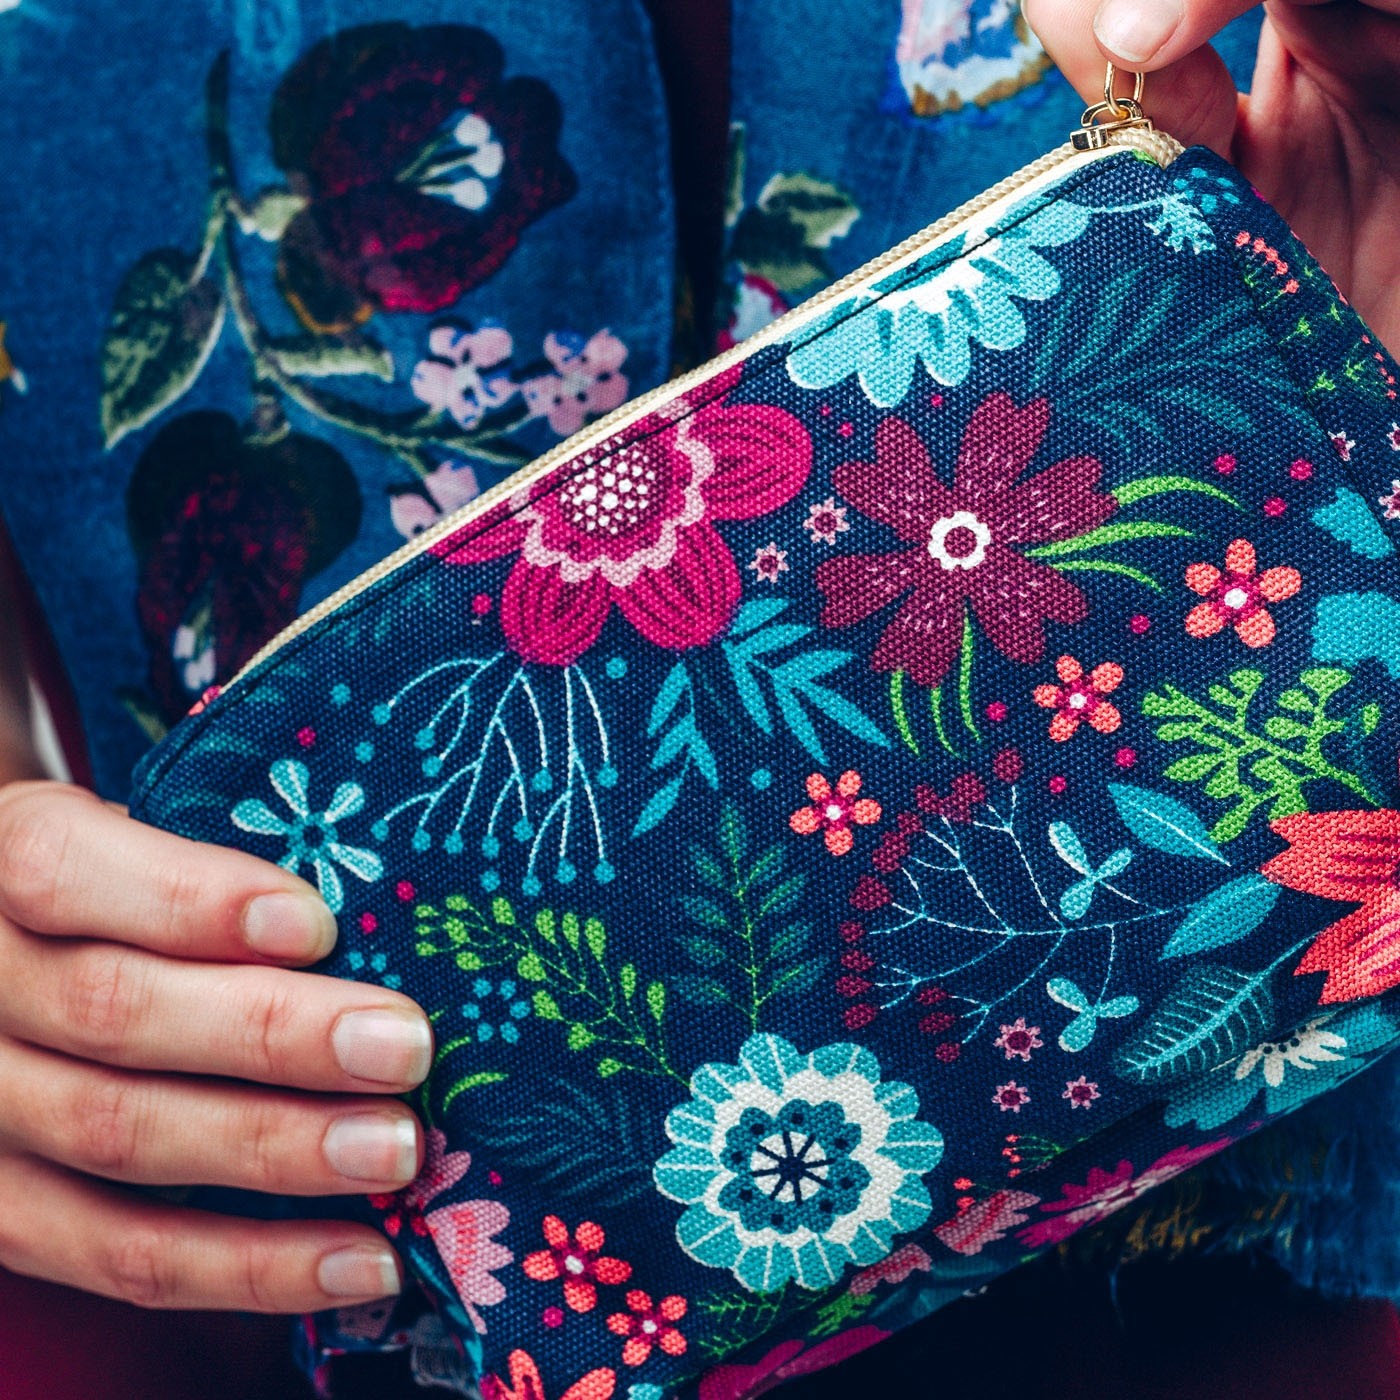 Make up bag in bold blue and pink floral design on a dark background